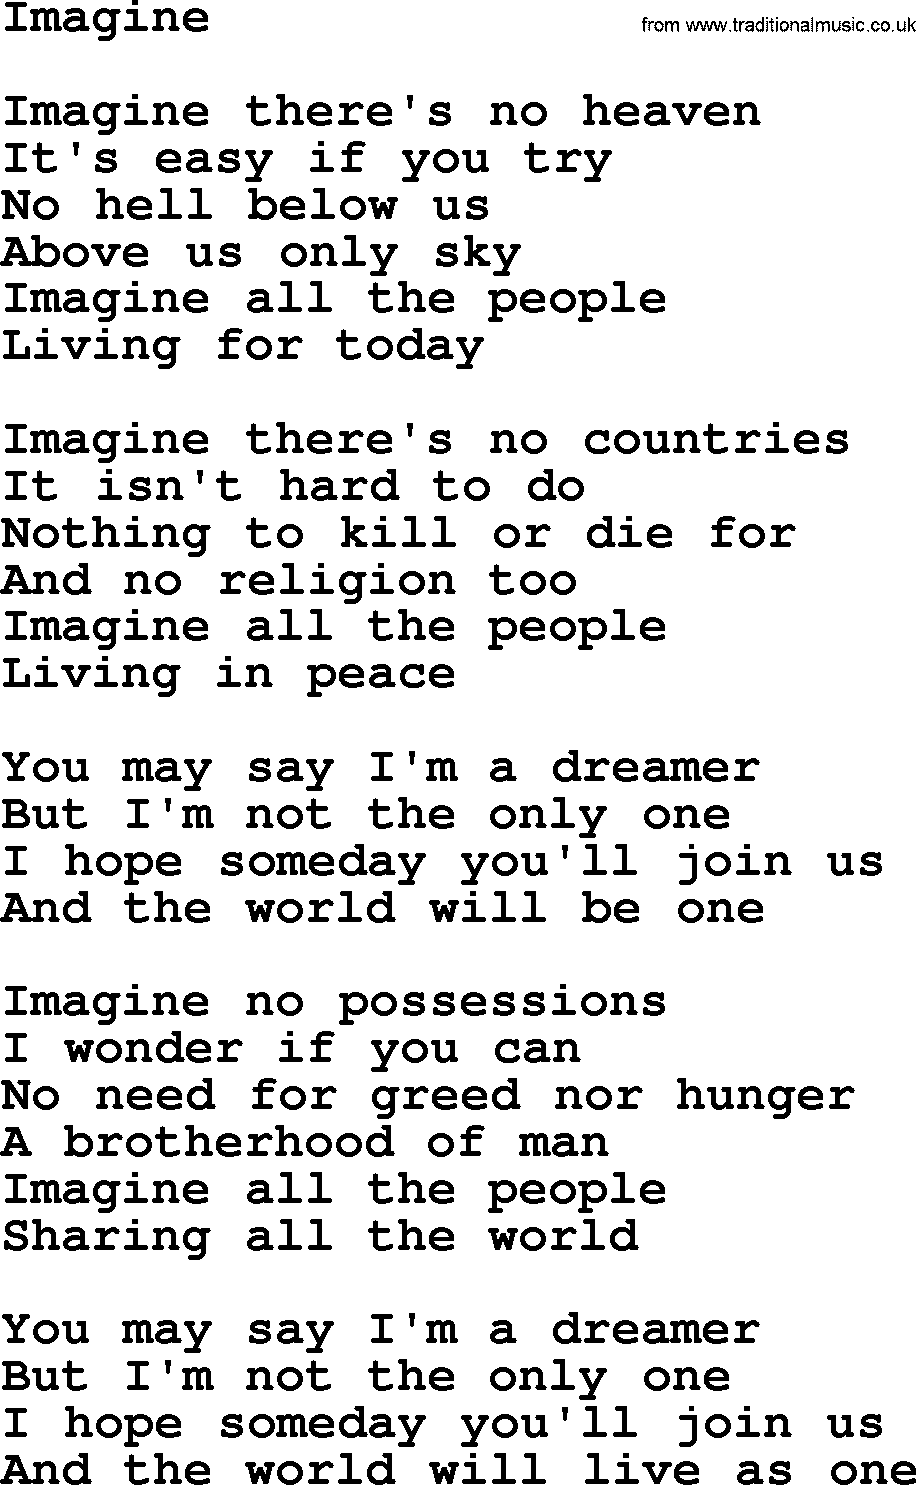 Joan Baez song Imagine, lyrics